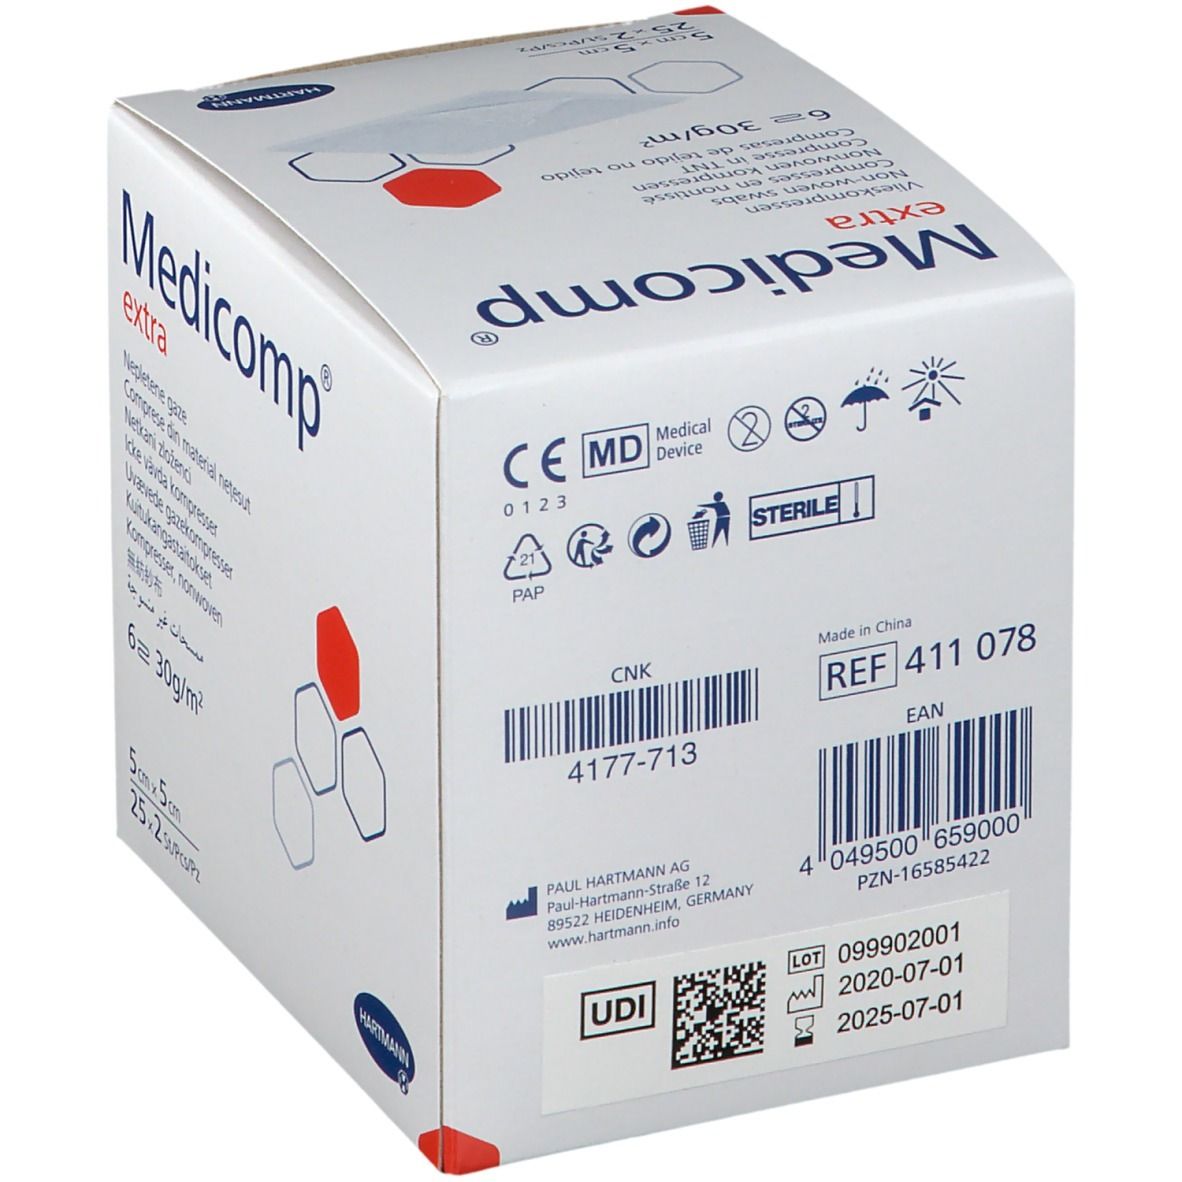 Medicomp®  Compresses non-tissé sterile 5 cm x 5 cm 4plis